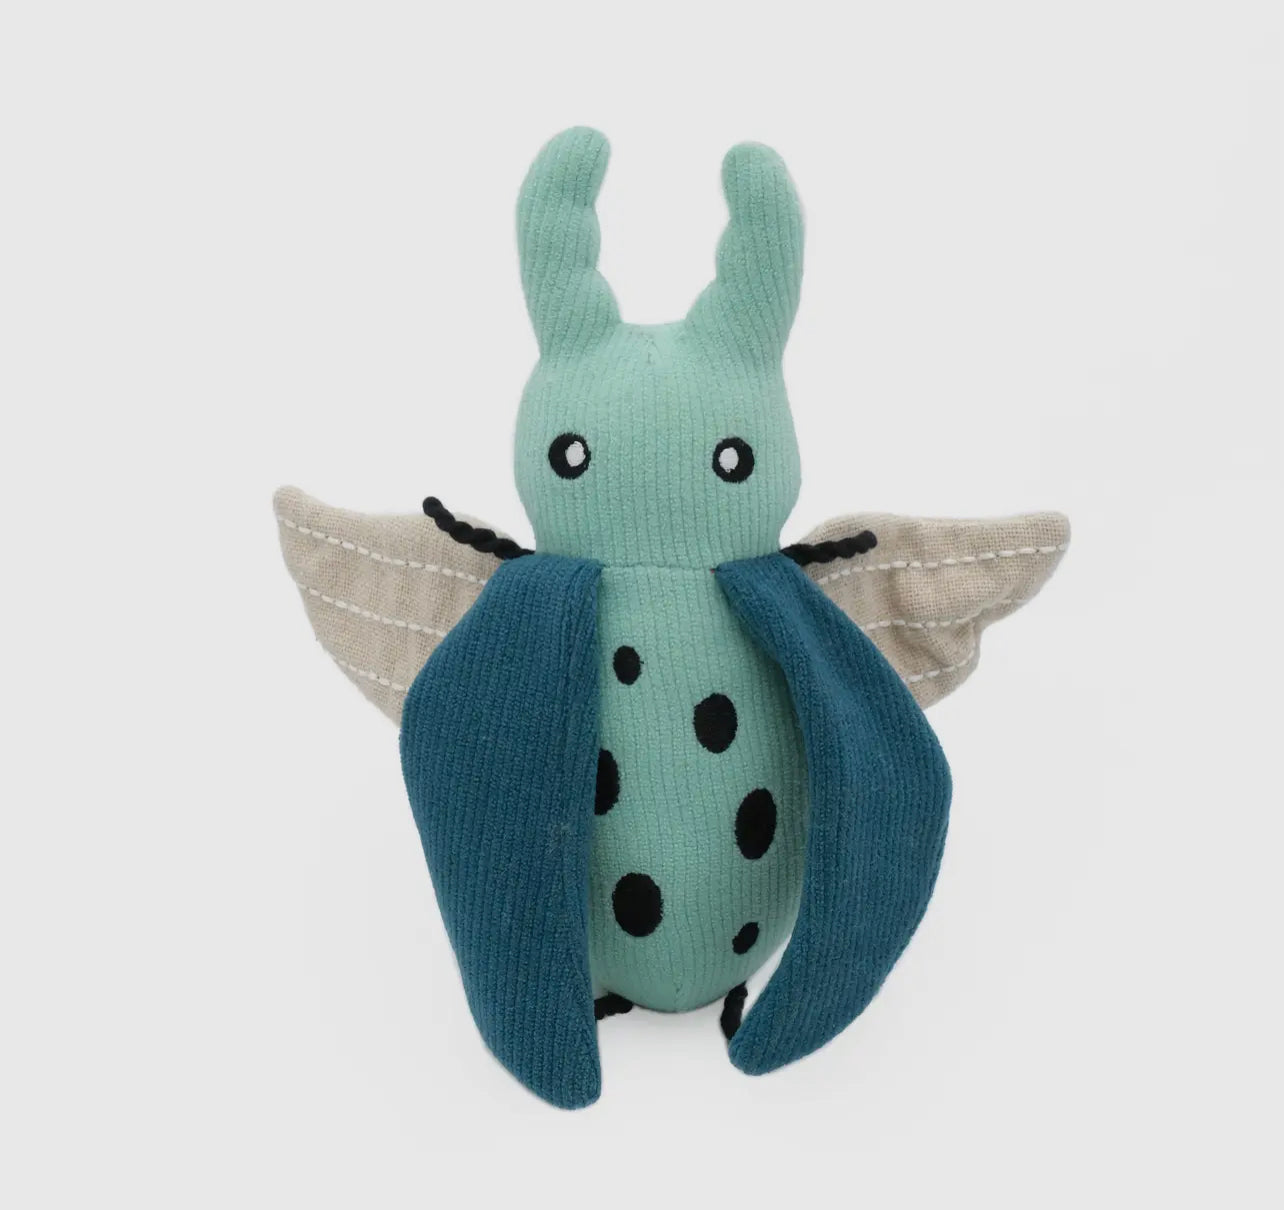 Eco beetle toy